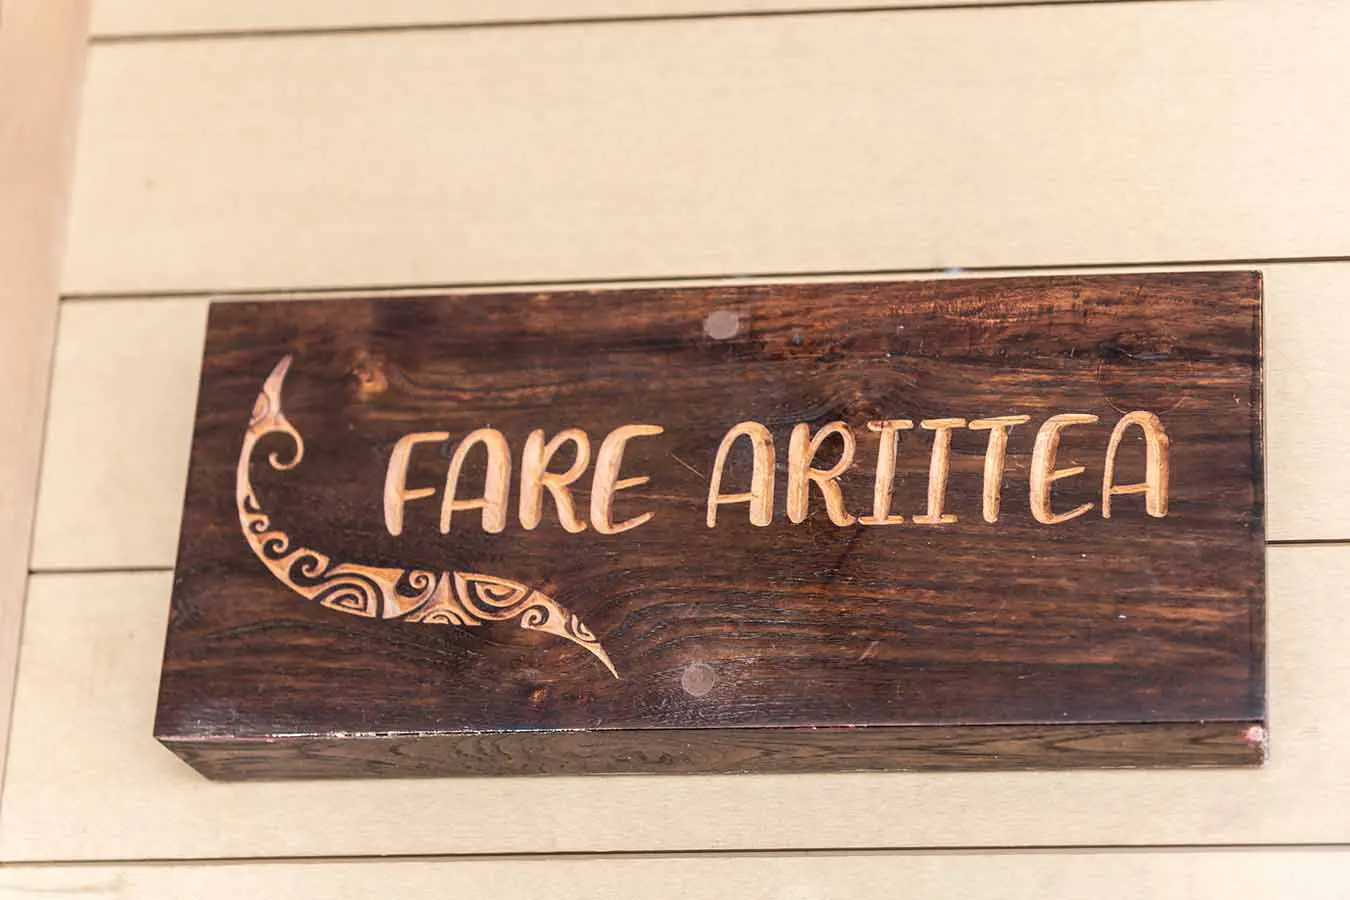 Sign "Fare Ariitea" in our vacation home in Bora Bora